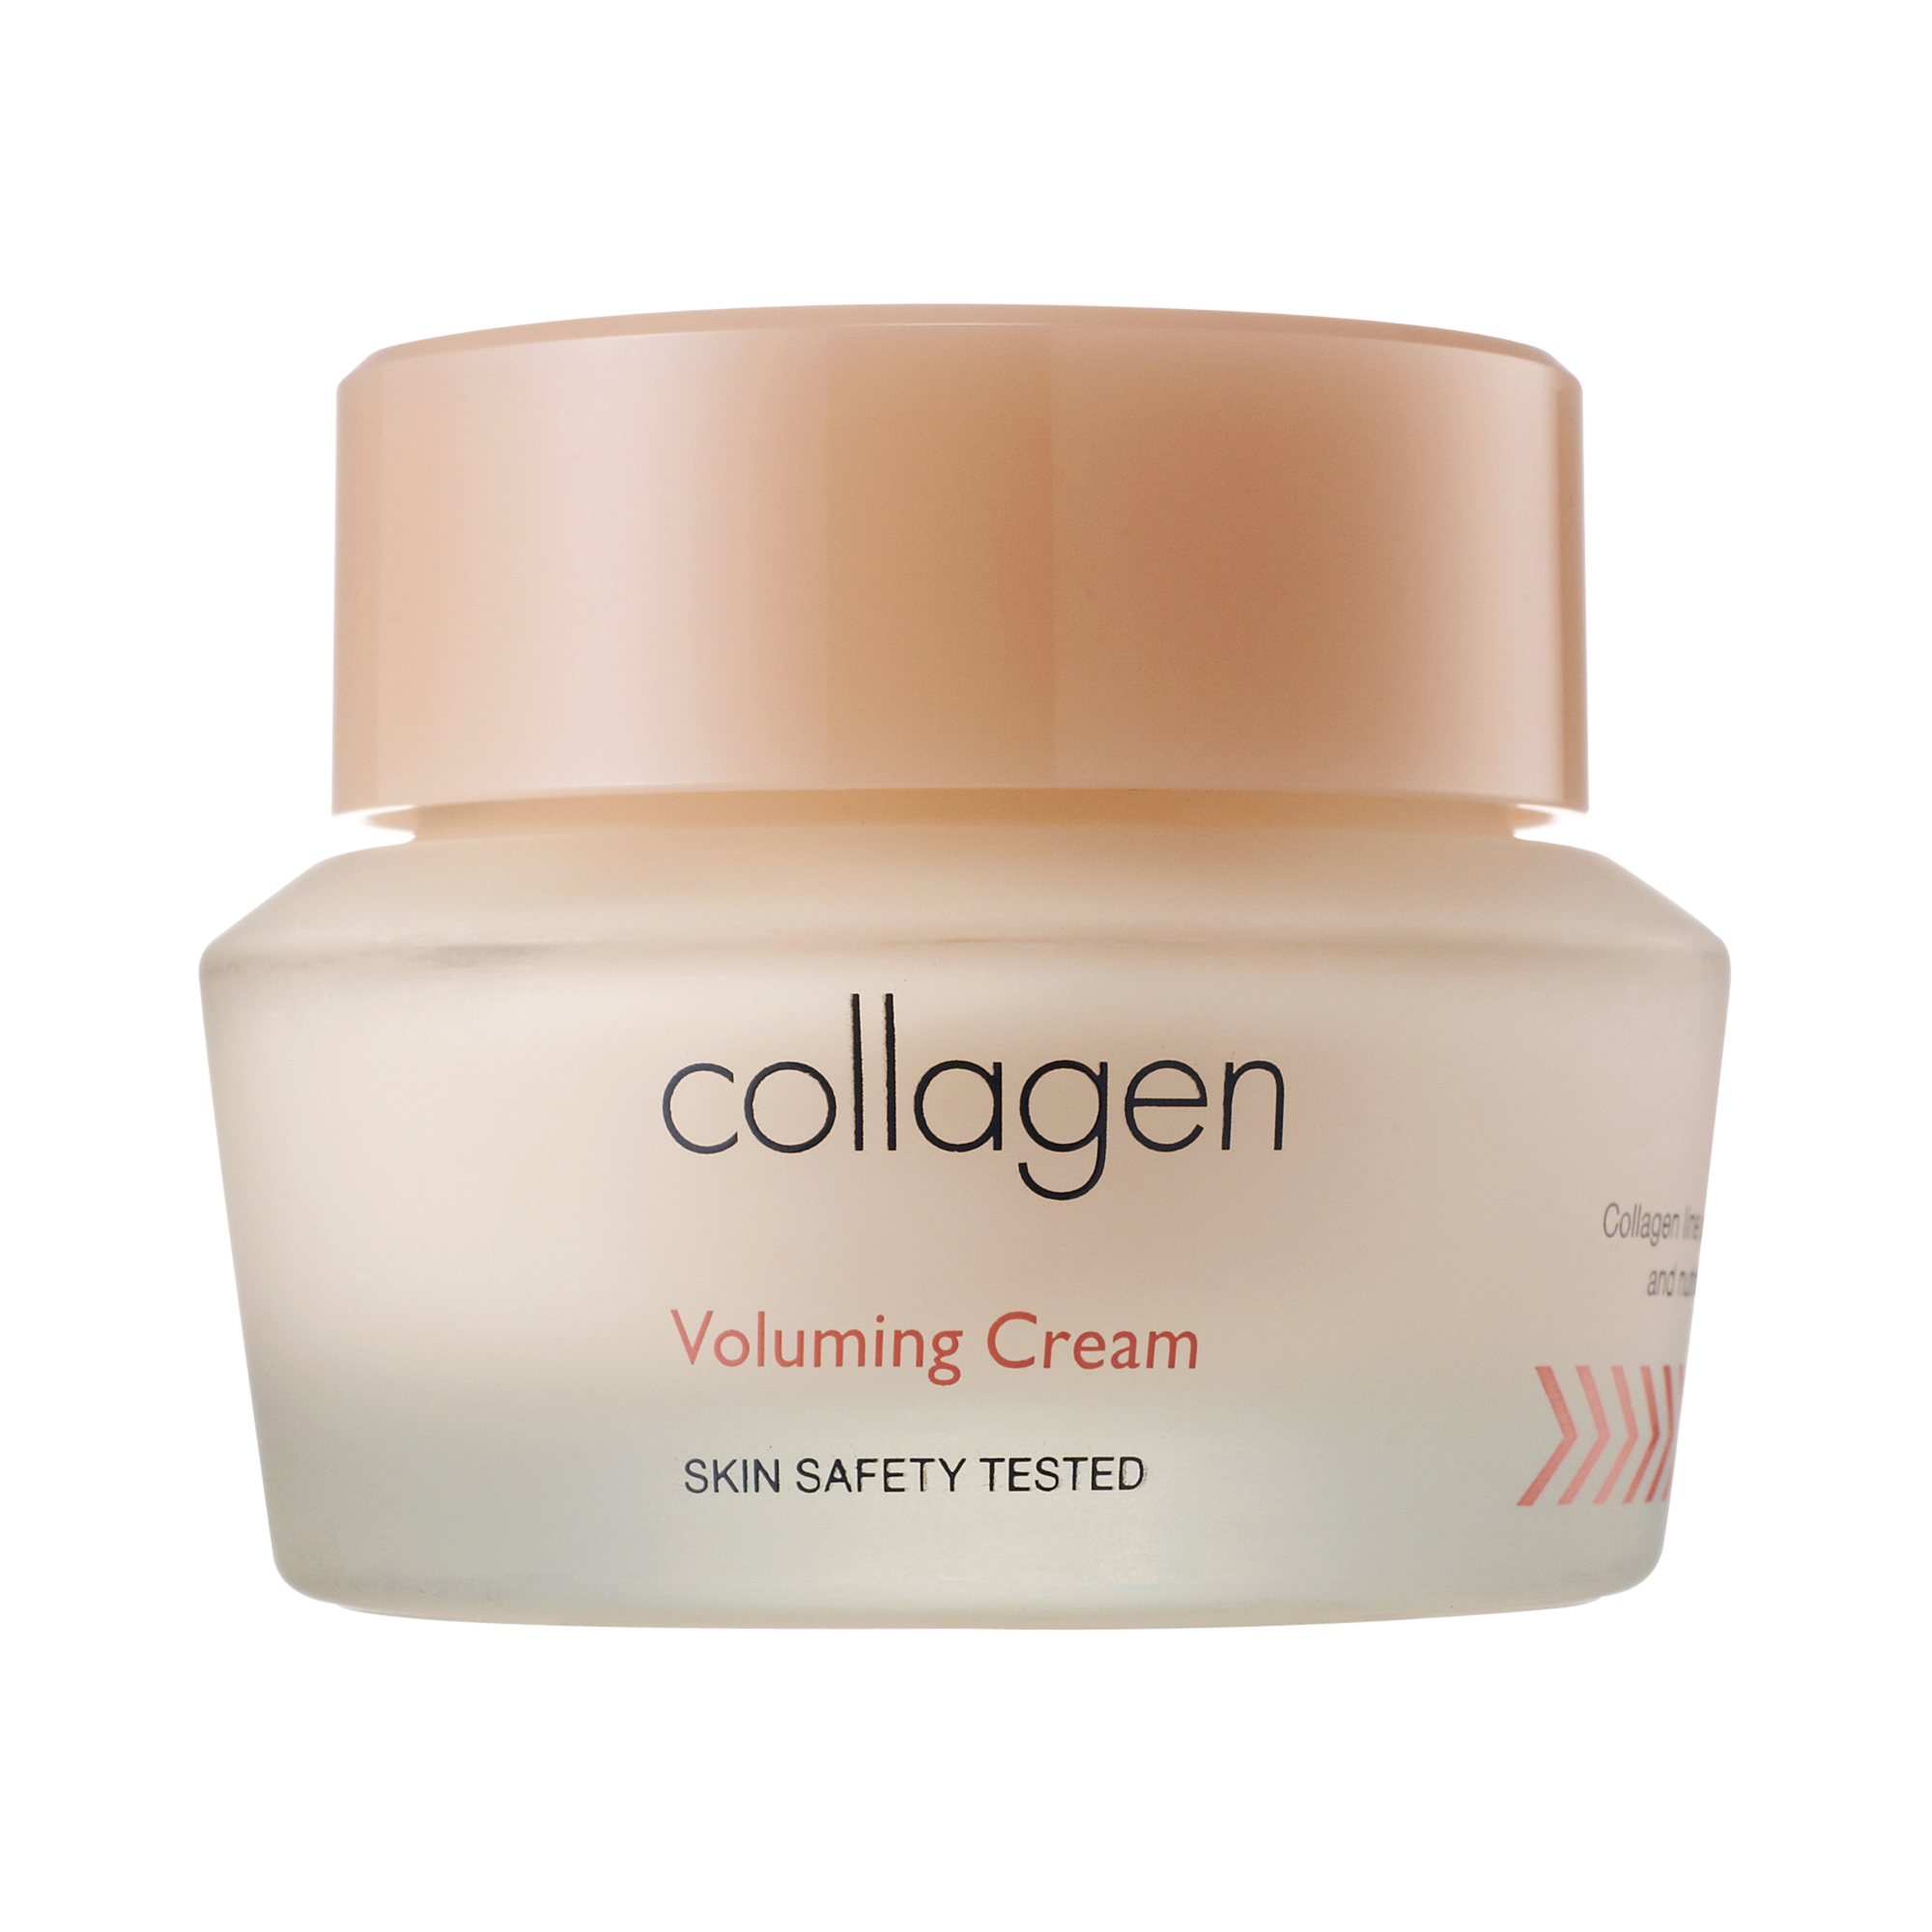 Collagen Voluming Cream